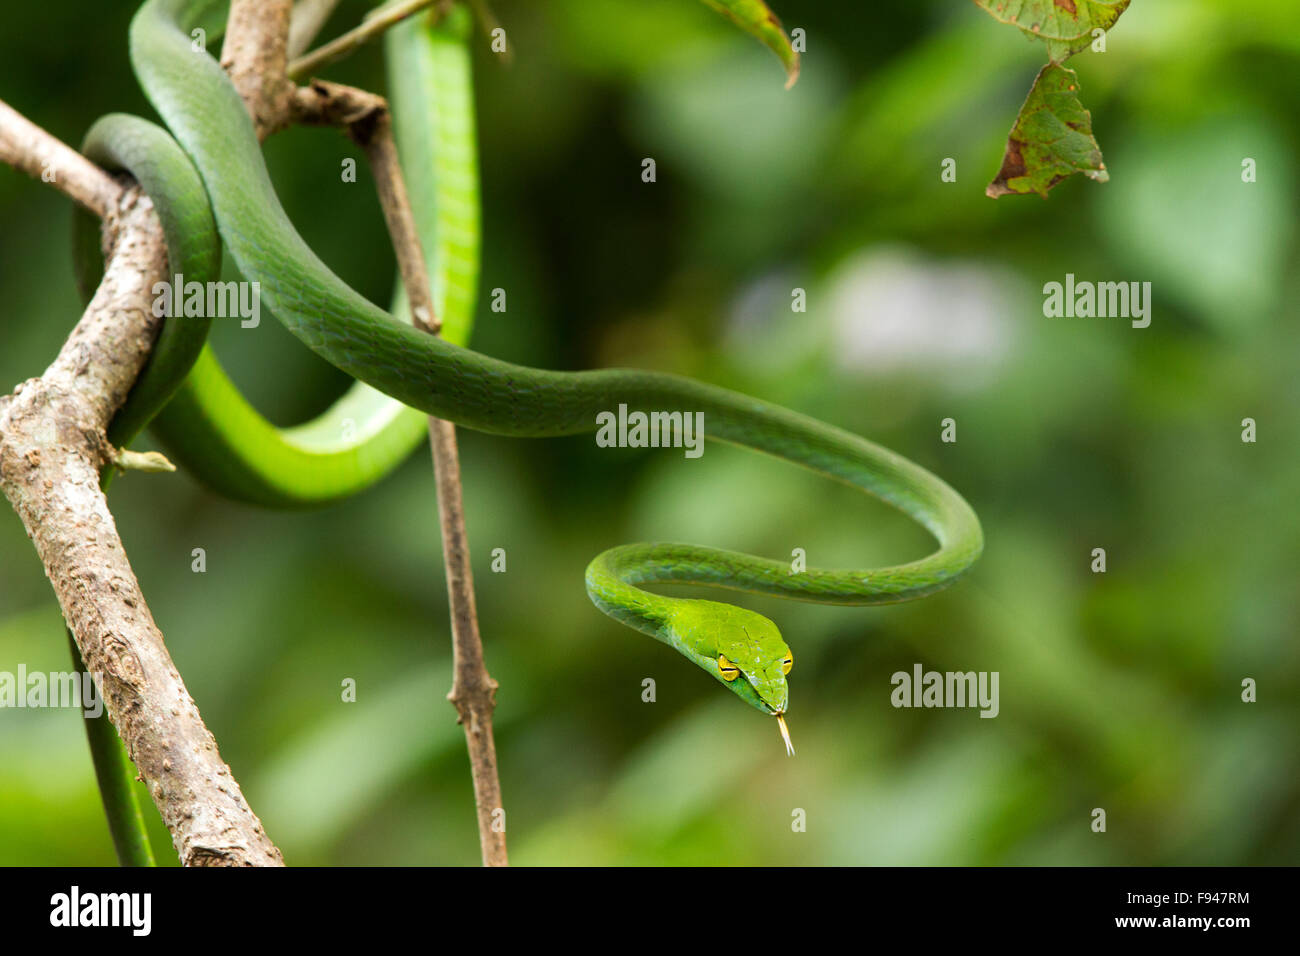 Le Serpent de vigne commune (Ahaetulla nasuta), est un mince serpent vert trouvés en Inde Banque D'Images